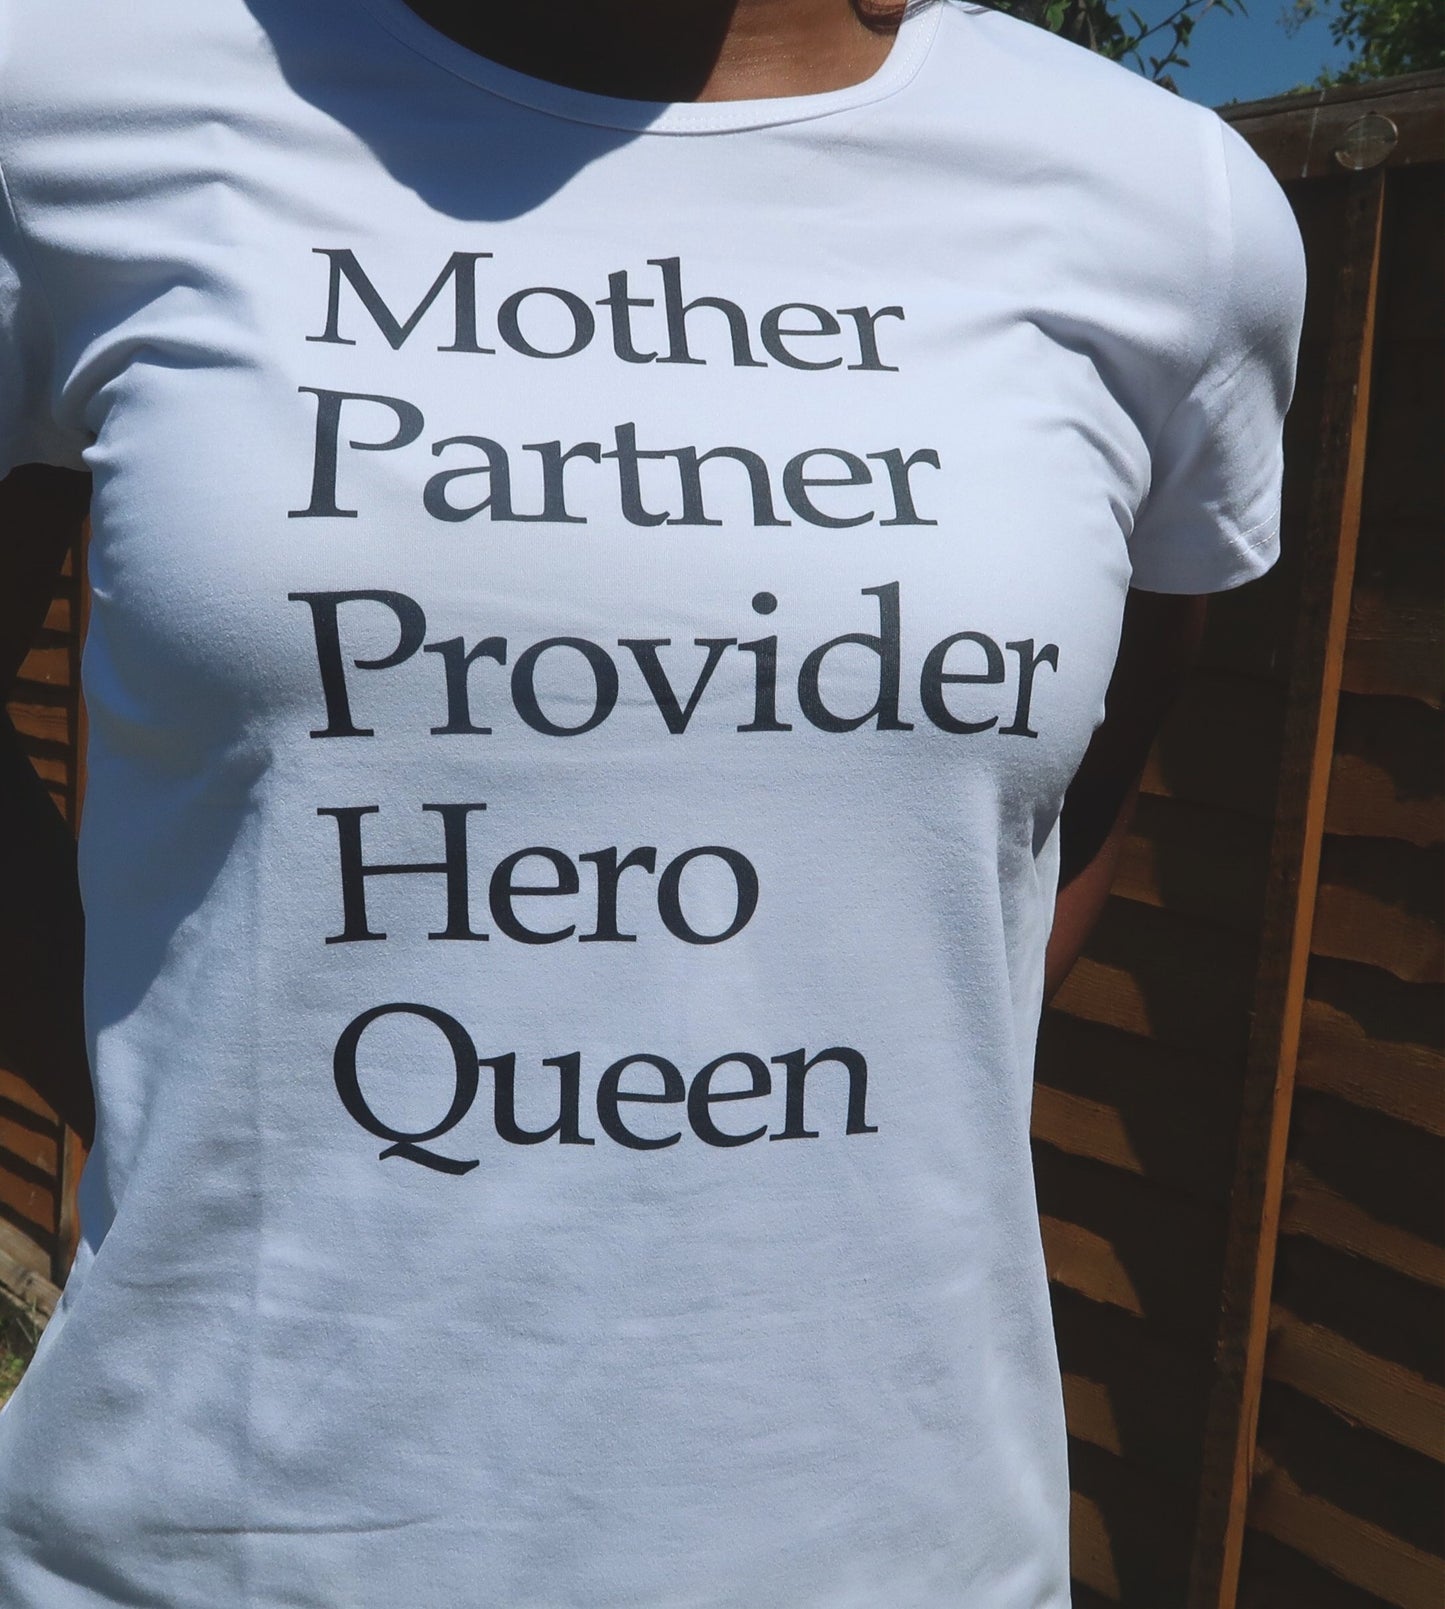 Mother, Partner, Provider, Hero, Queen